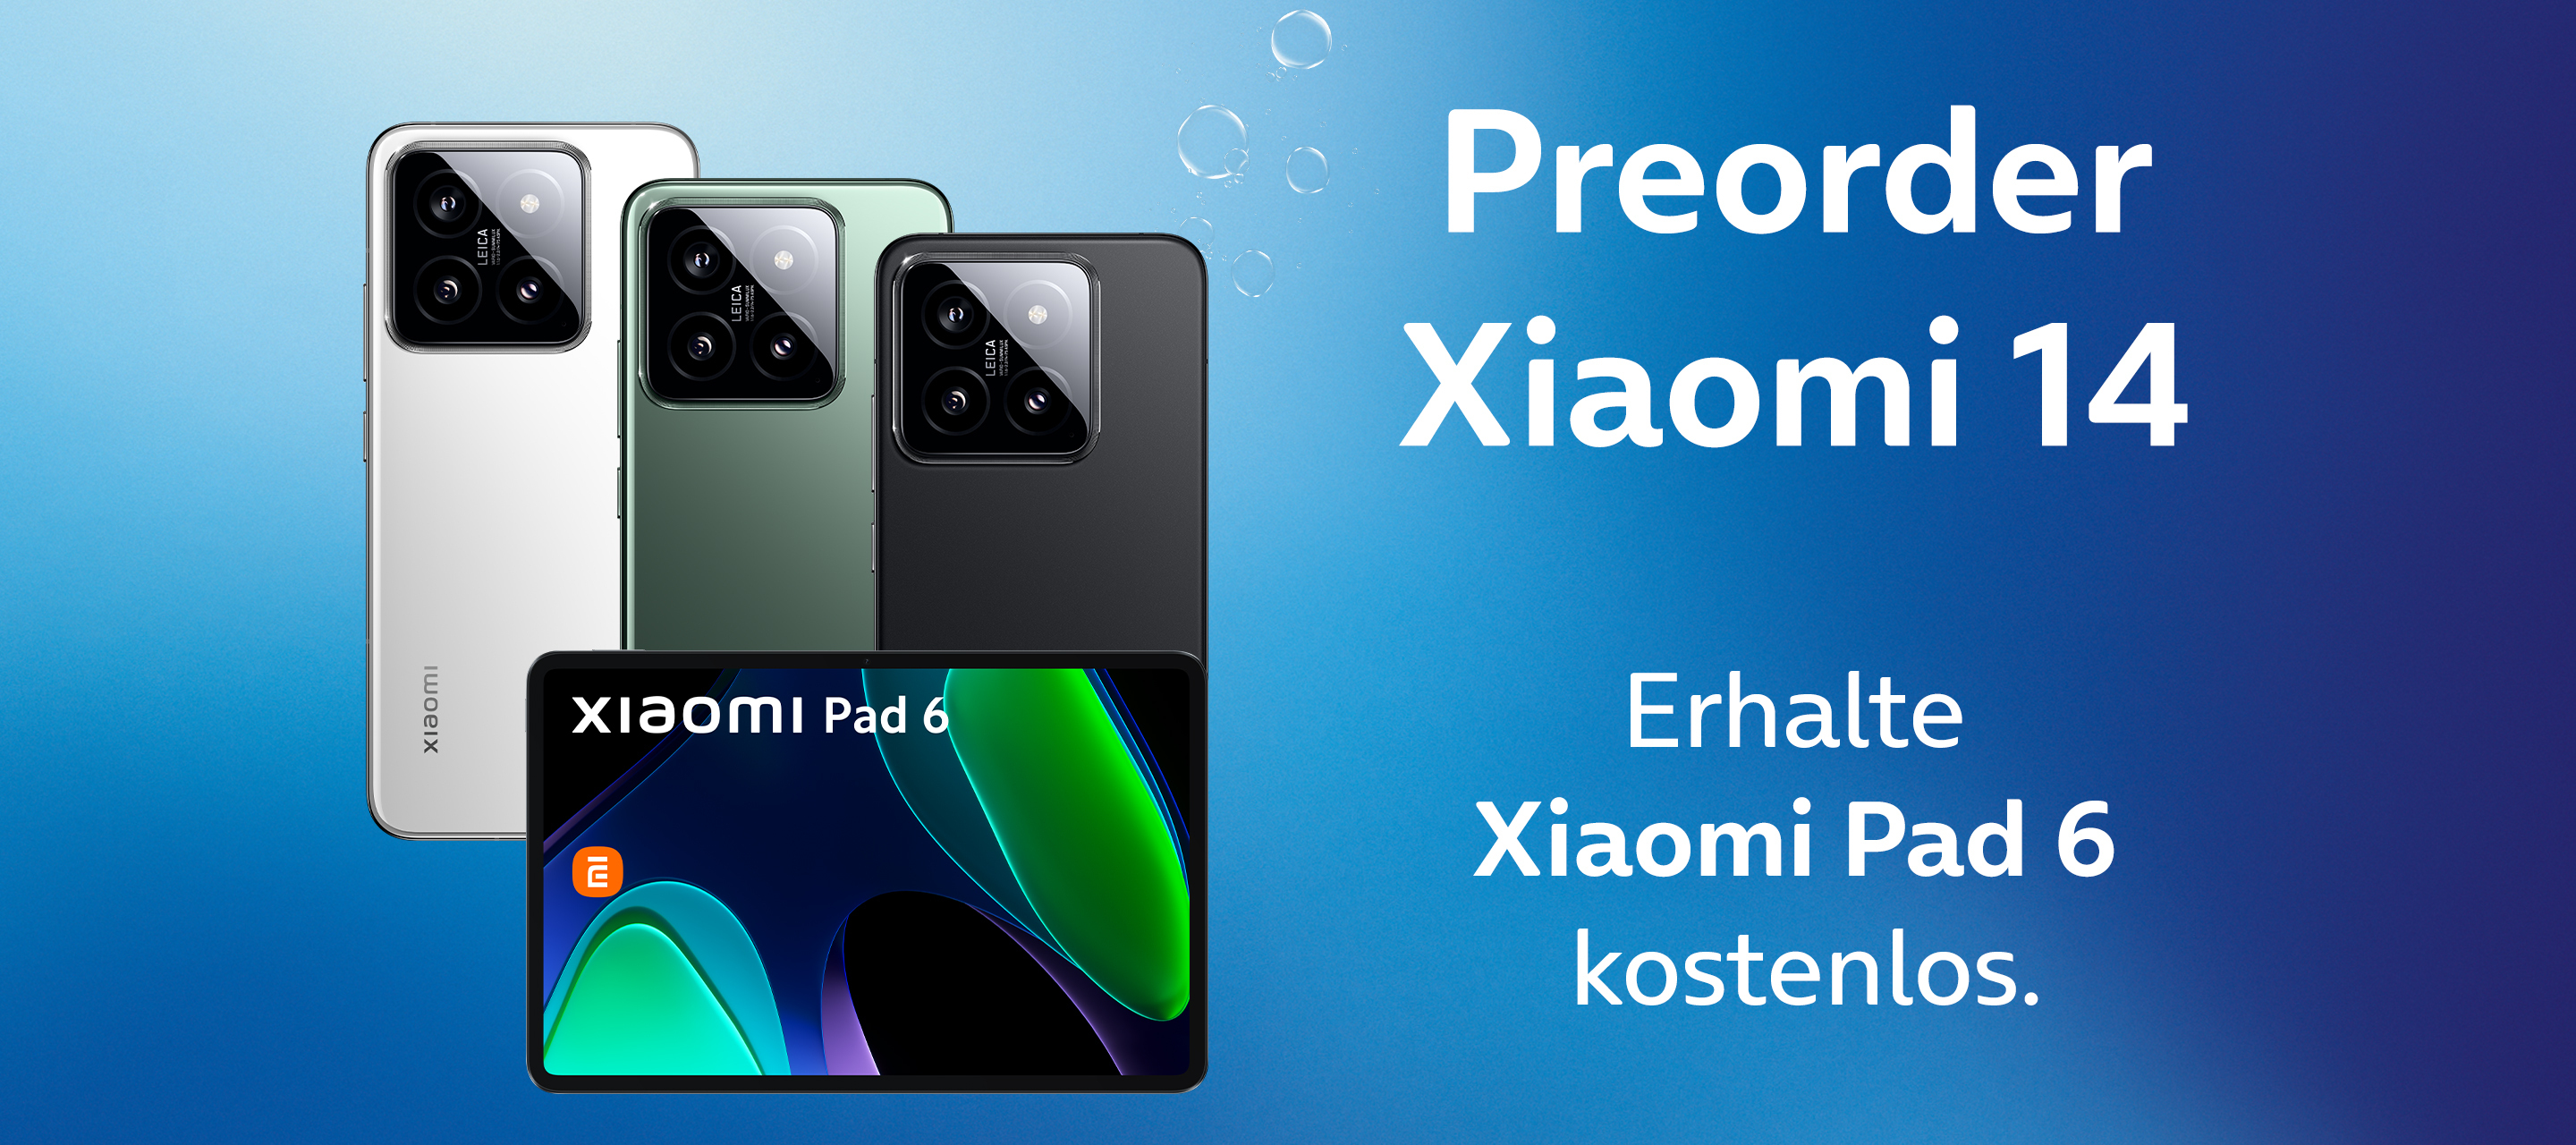 Zum Zugreifen - Die neuen Xiaomi 14 Modelle inklusive Vorbestellerbonus